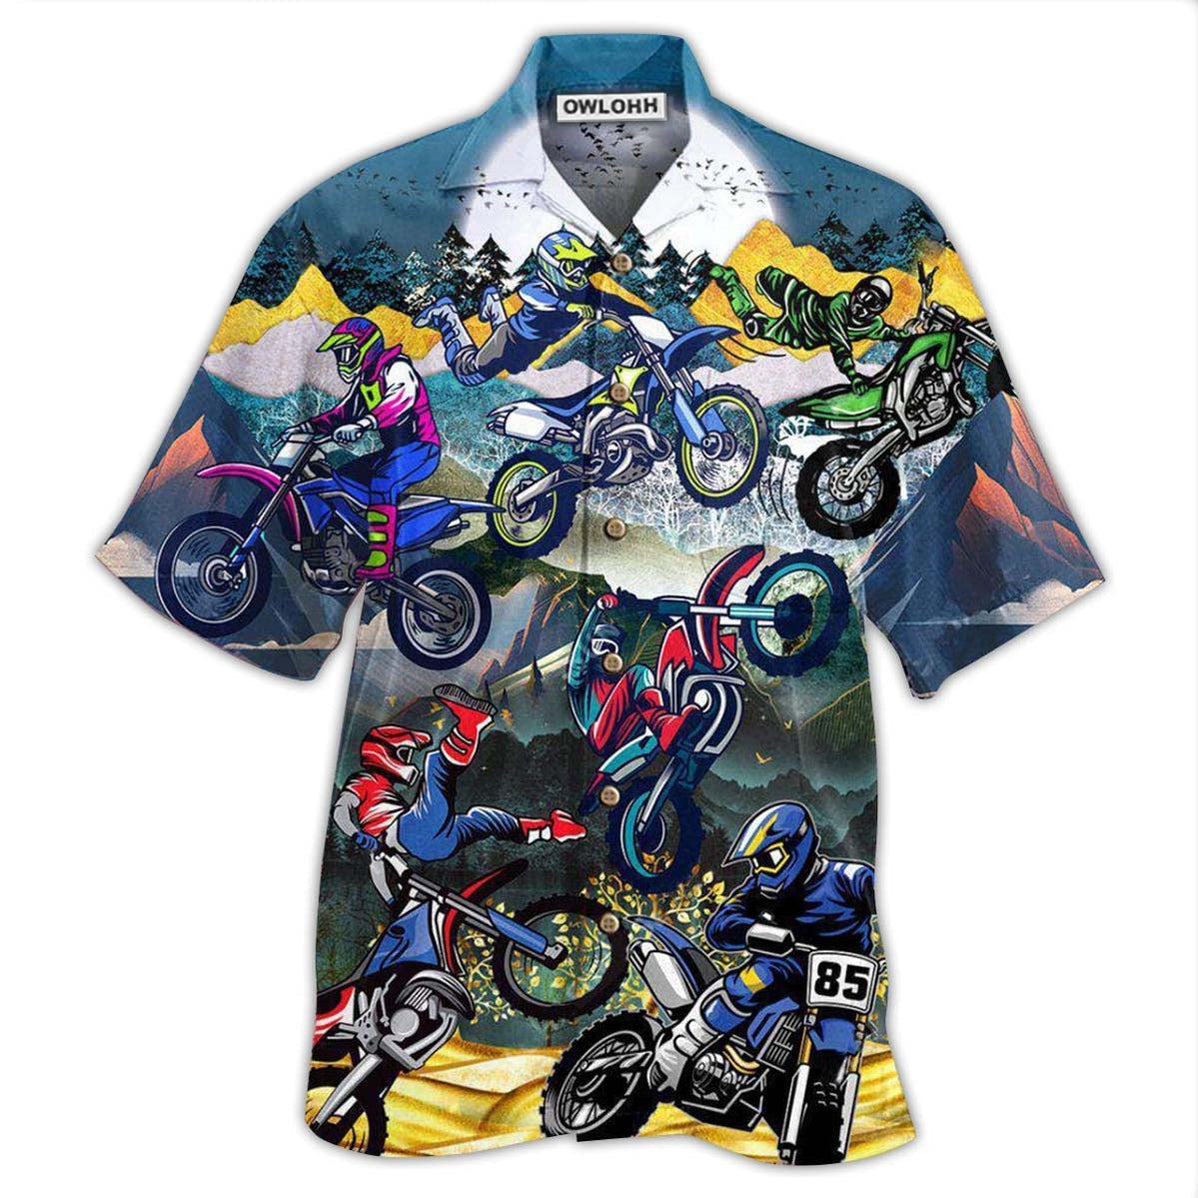 Hawaiian Shirt / Adults / S Motorcycle When Life Gets Complicated I Ride - Hawaiian Shirt - Owls Matrix LTD